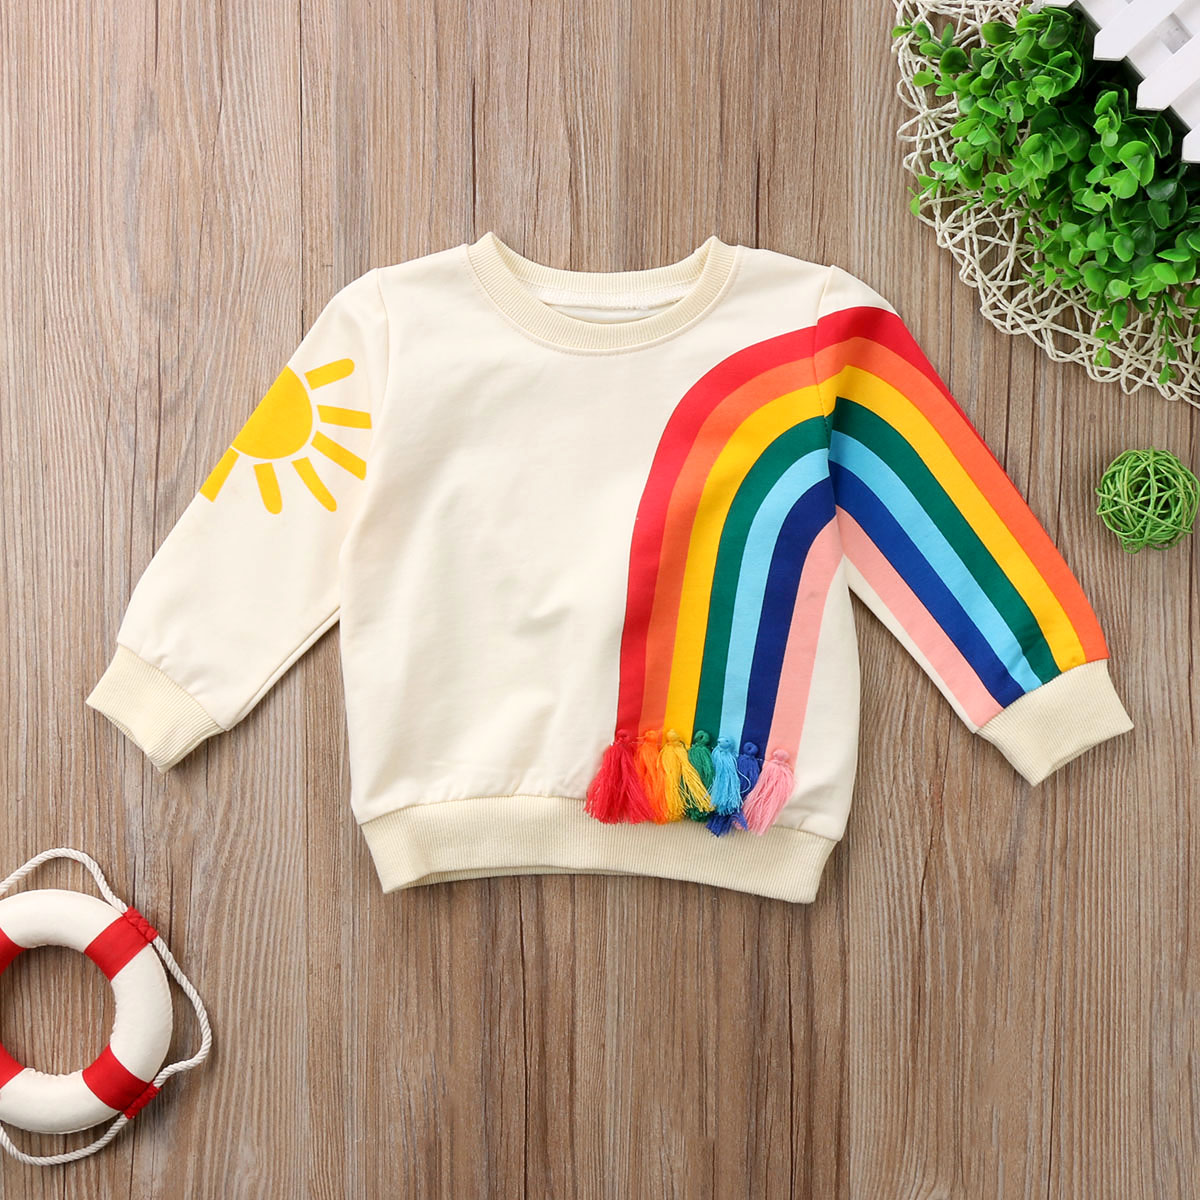 Baby piger børn regnbue t-shirt tøj bluse sweater sweatshirt cardigan langærmet bomuldstøj